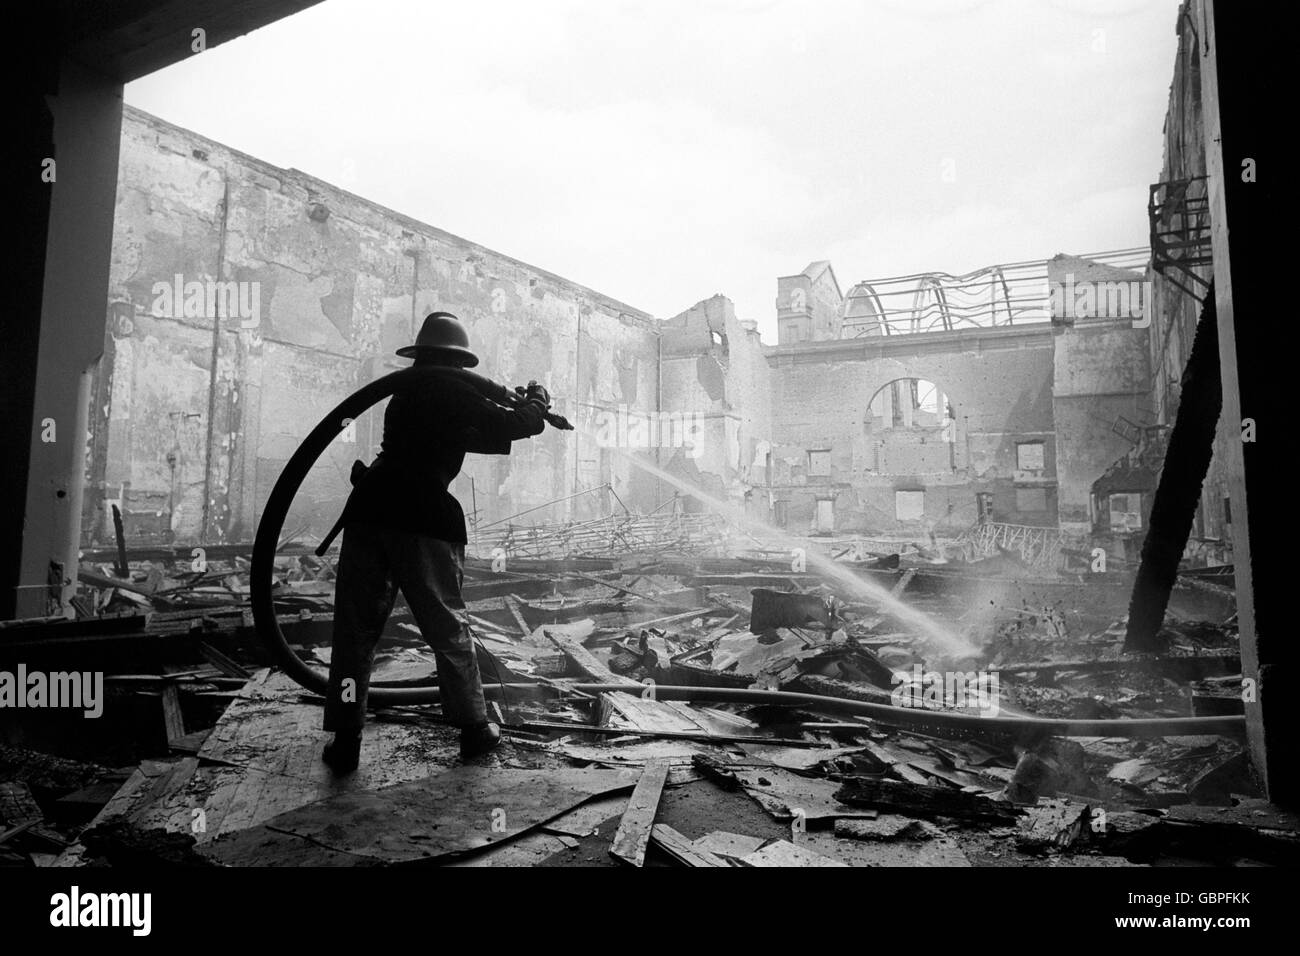 Die Feuerwehrleute, die nach einem Brand noch immer die Dämmung ausgemerzt haben, haben die große Halle des Alexandra Palace im Norden Londons vollständig entkuttet. Stockfoto